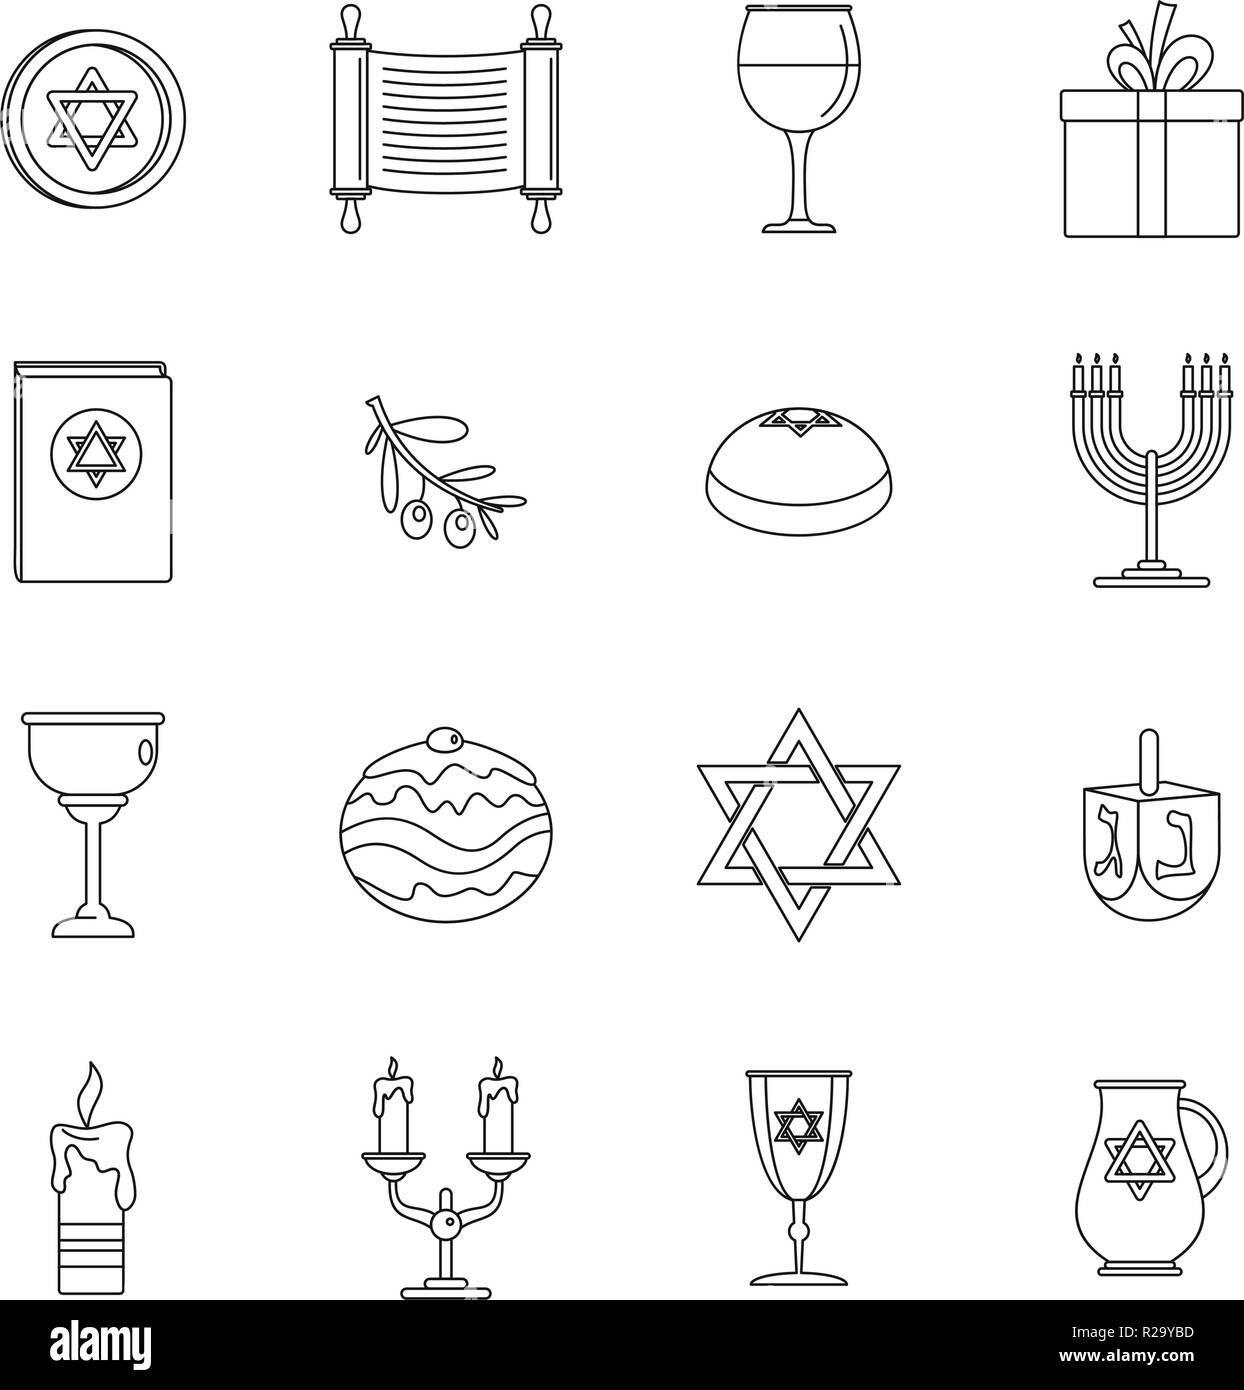 Fête juive Hanoucca icons set. Contours illustration de 'Hanoucca juive de 16 icônes vectorielles pour le web Illustration de Vecteur